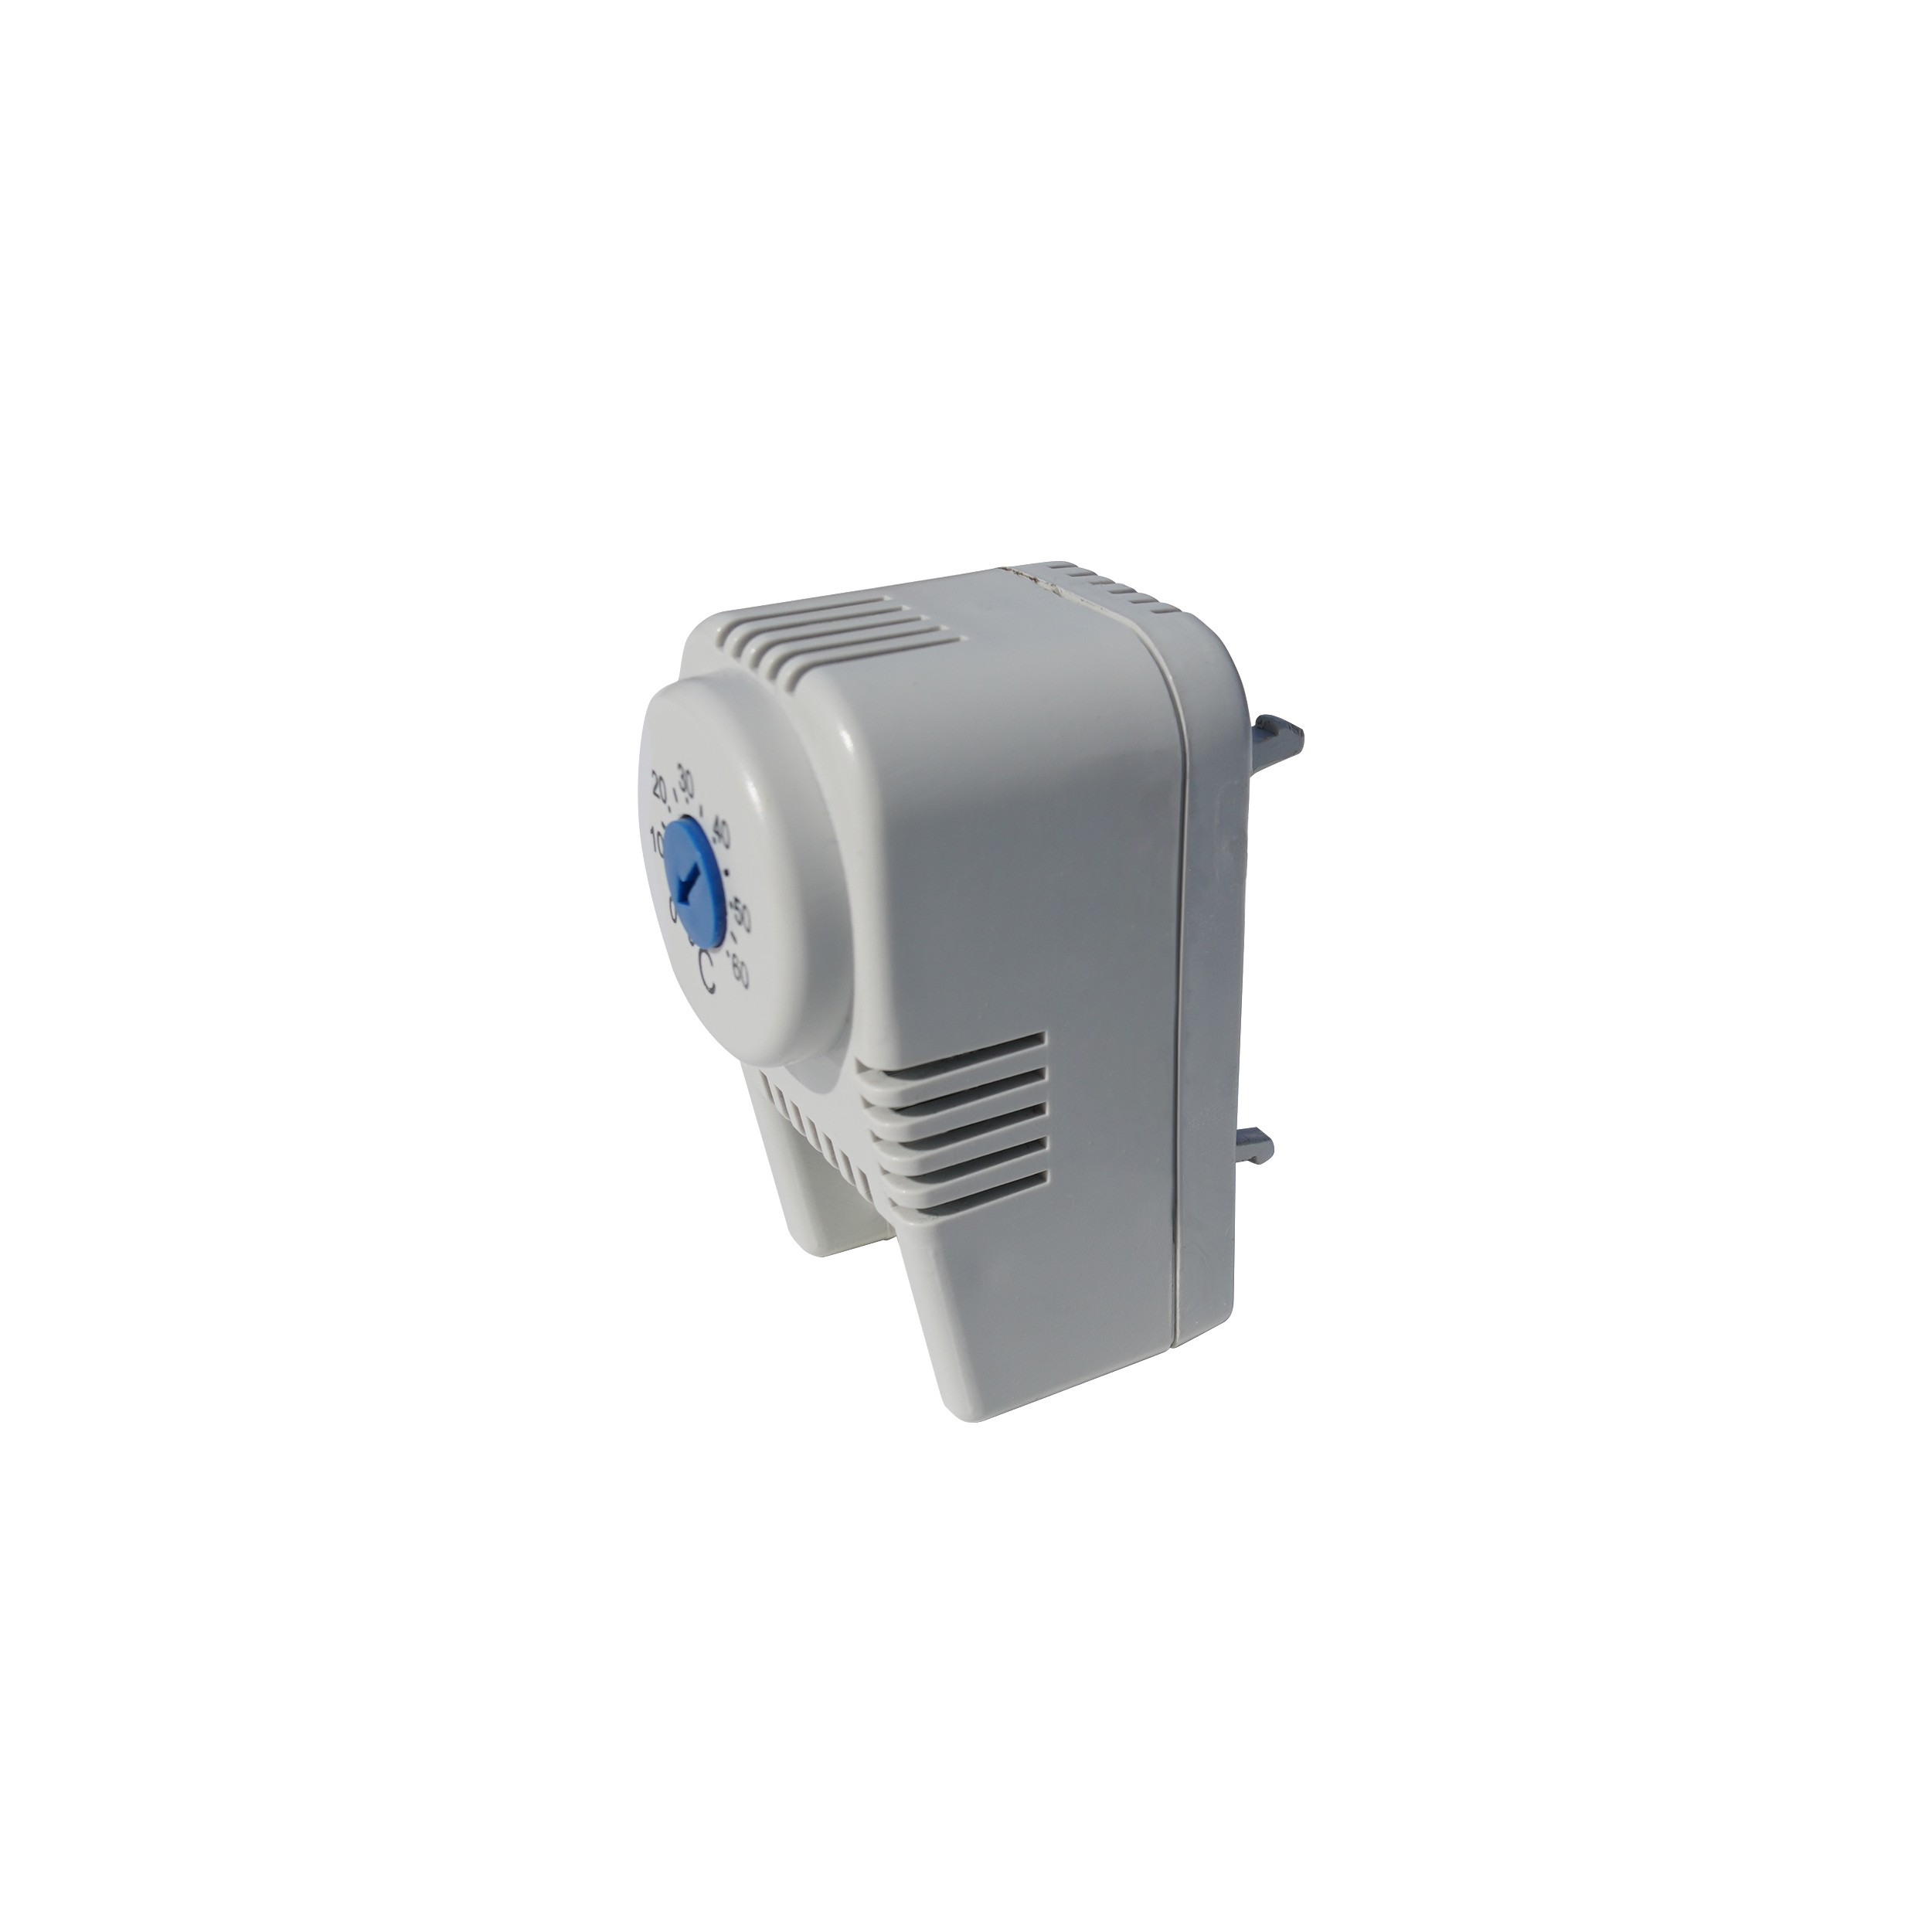 Thermostat für Lüfter MSR-L600 und MSR-L800 für 19